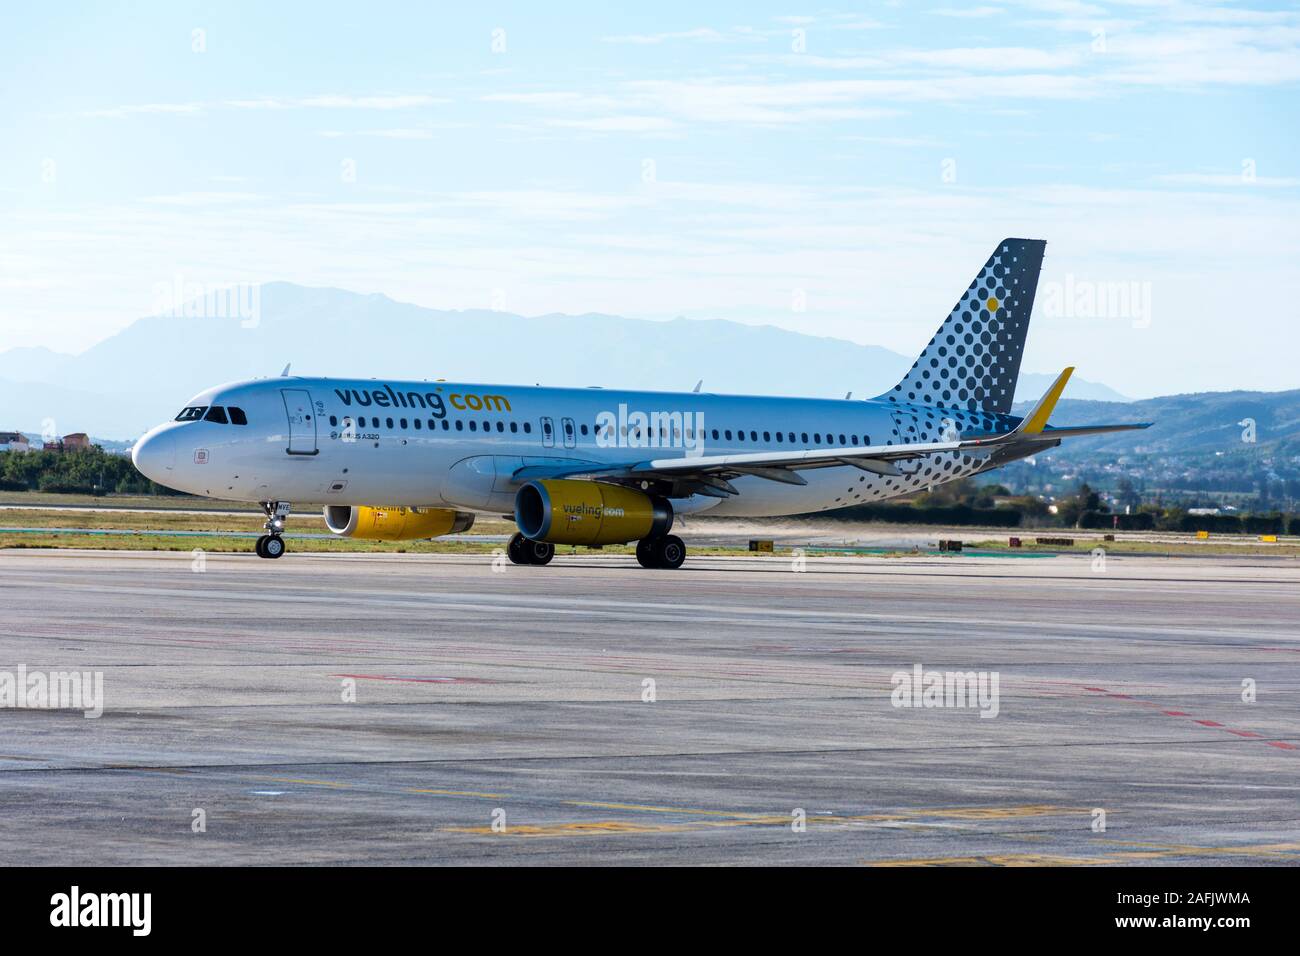 Vueling Airbus A320 aircraft at Malaga Airport, Spain. Stock Photo